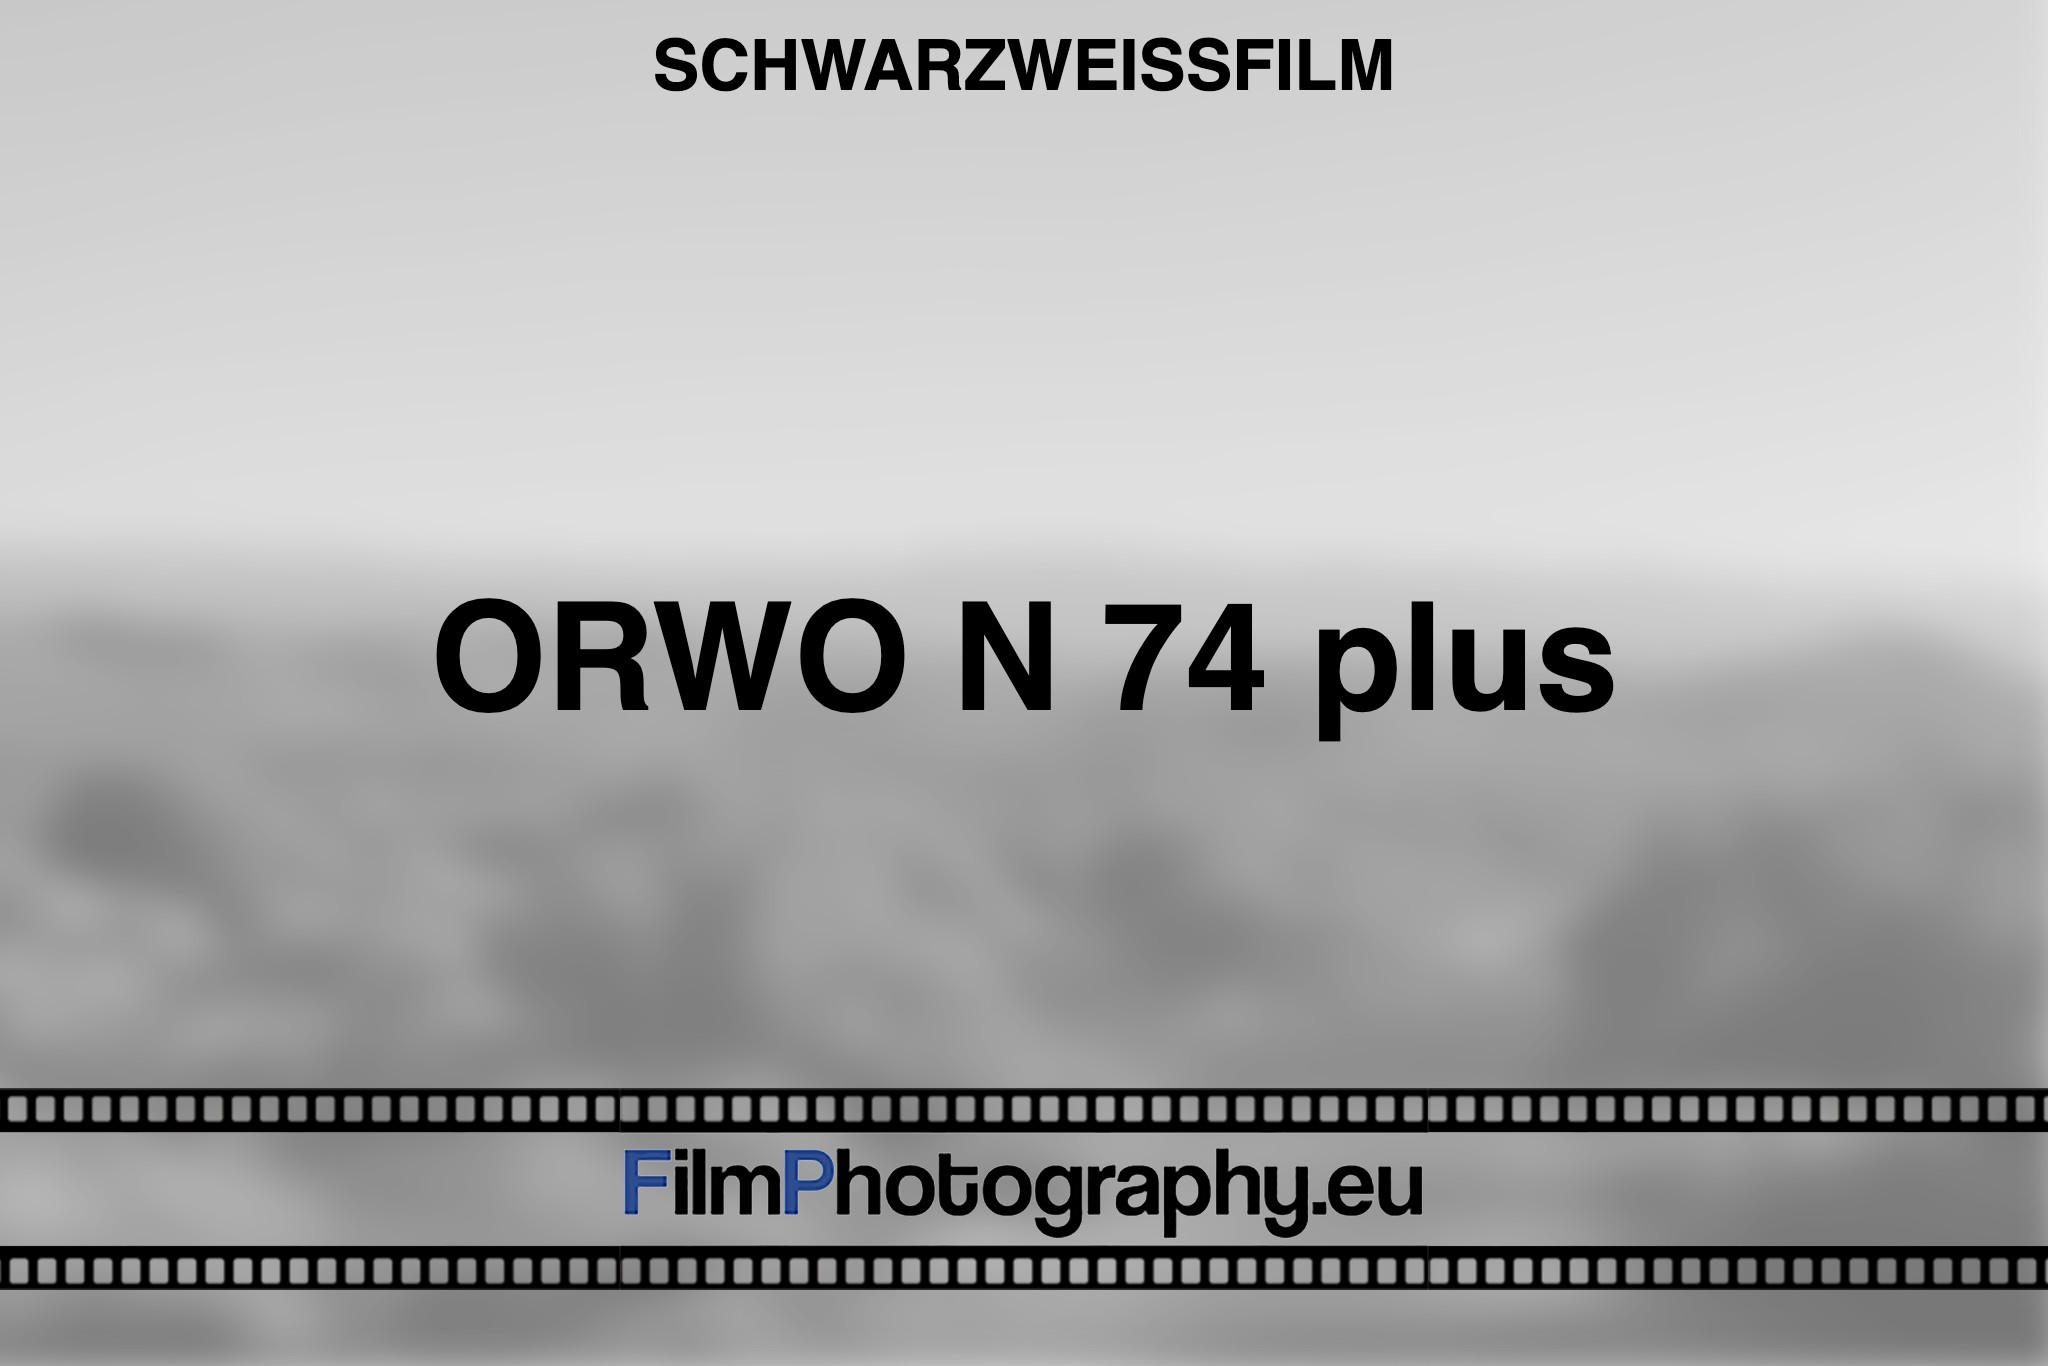 orwo-n-74-plus-schwarzweißfilm-bnv